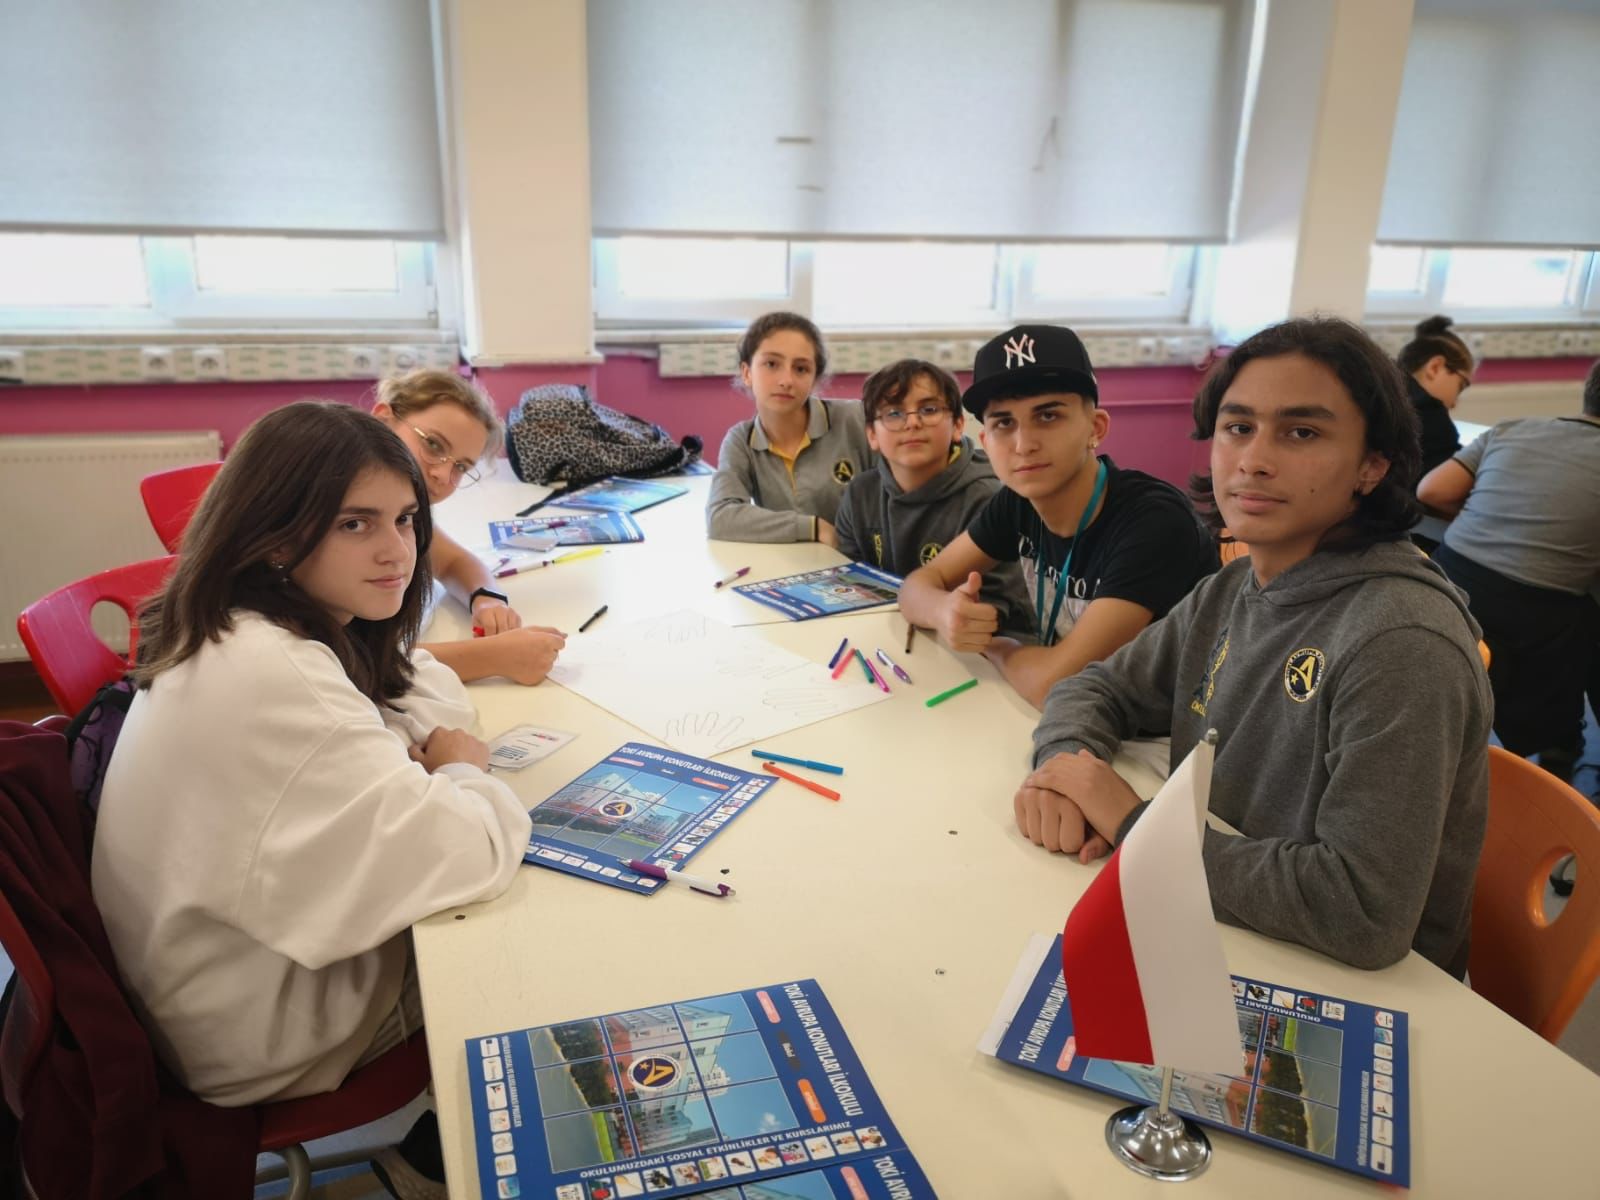 Accreditamento Erasmus Plus Liceo Classicoscientifico Euclide Cagliari 